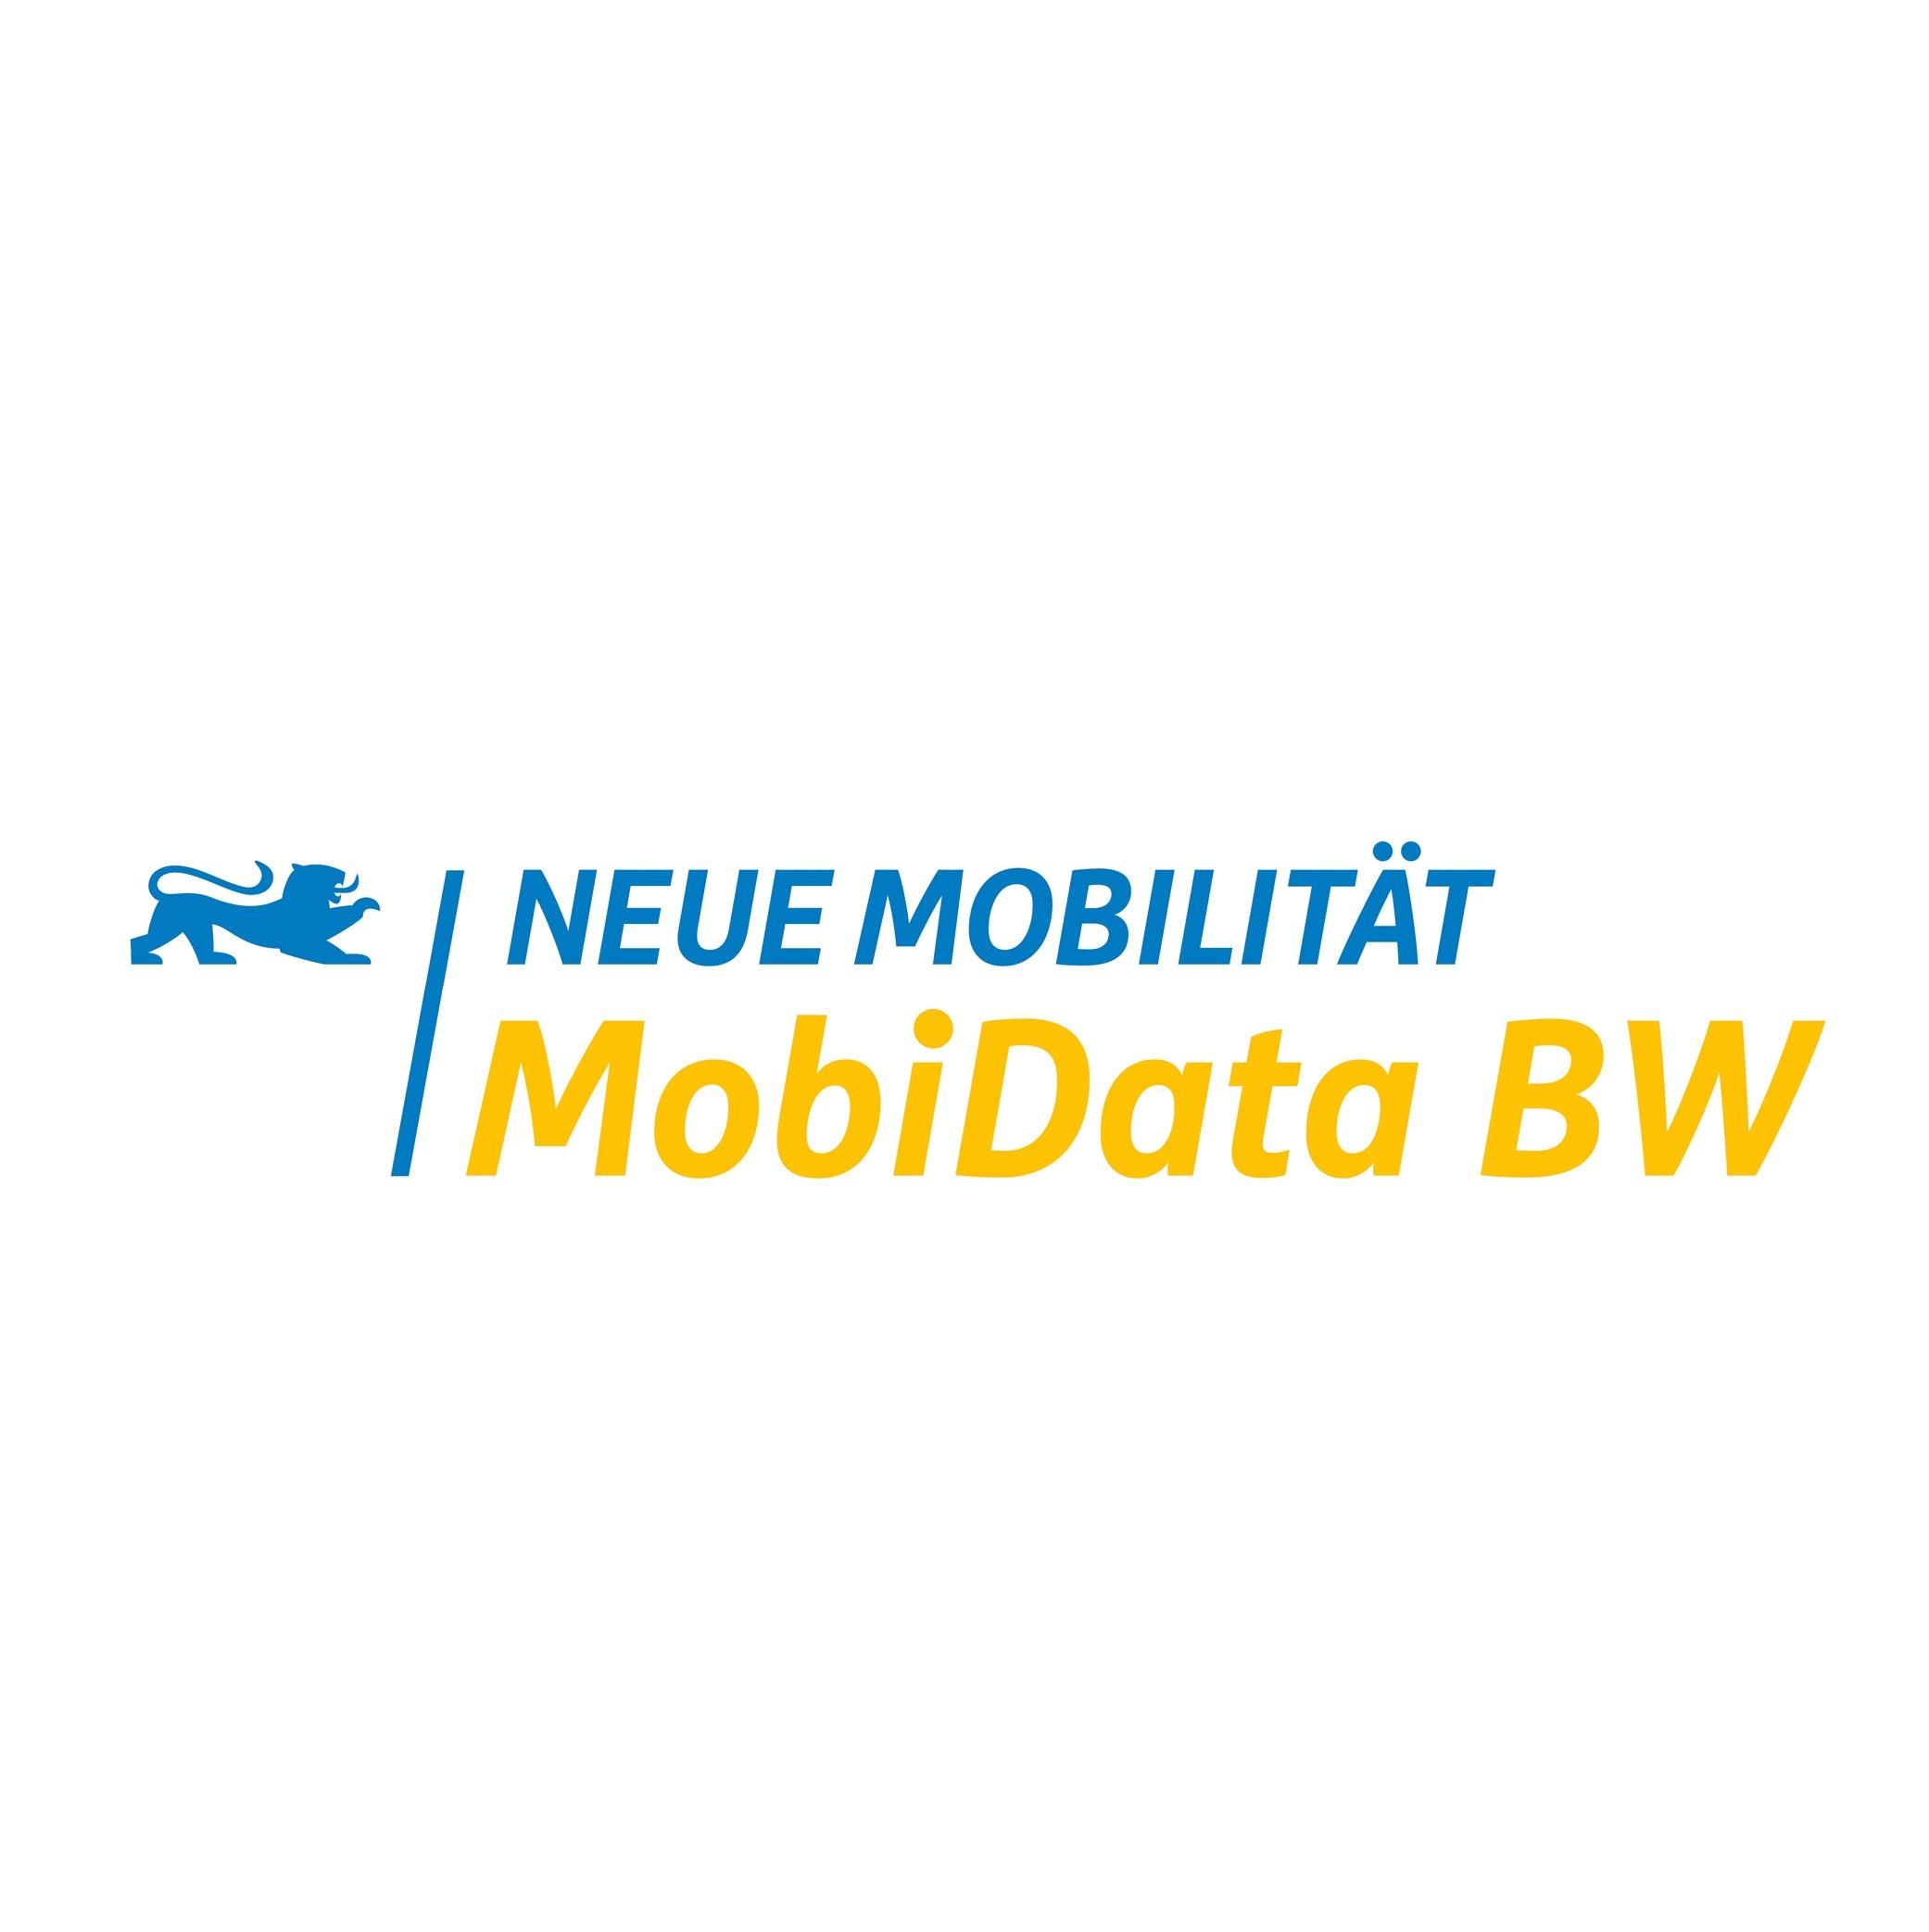 MobiData BW Podcast – Mit Daten klimafreundliche Mobilität voranbringen